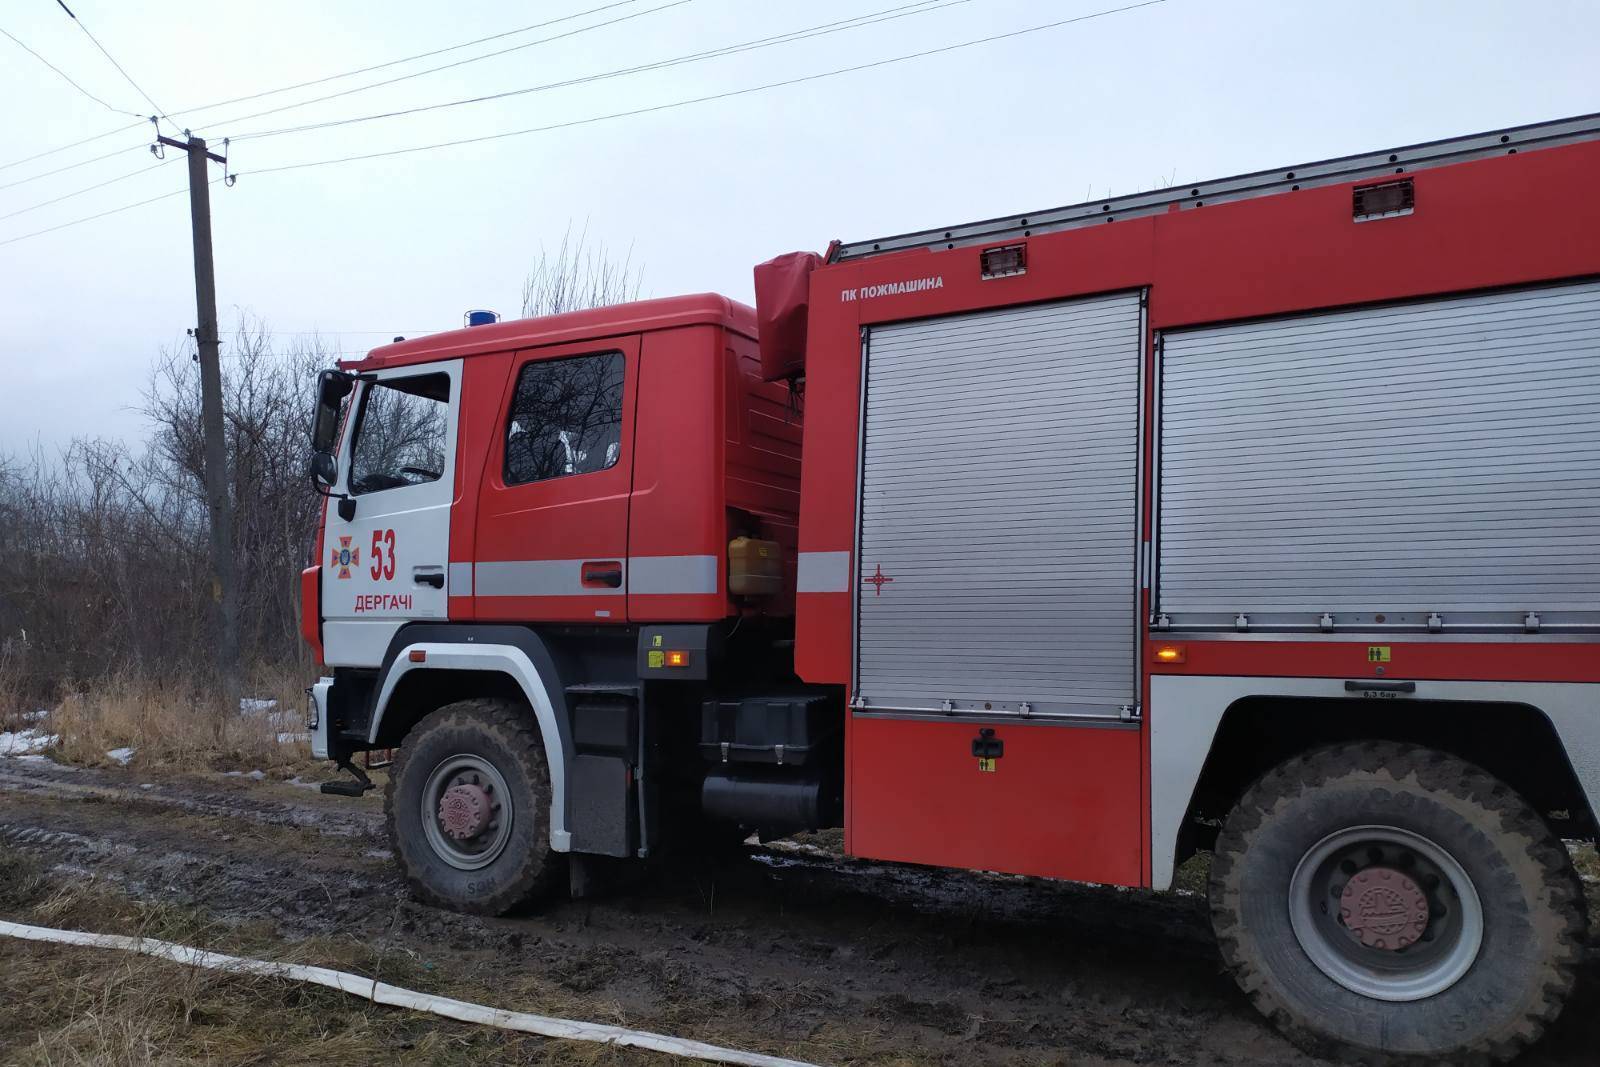 Харківська область: під час гасіння пожежі у приватному будинку вогнеборці виявили тіло загиблої людини